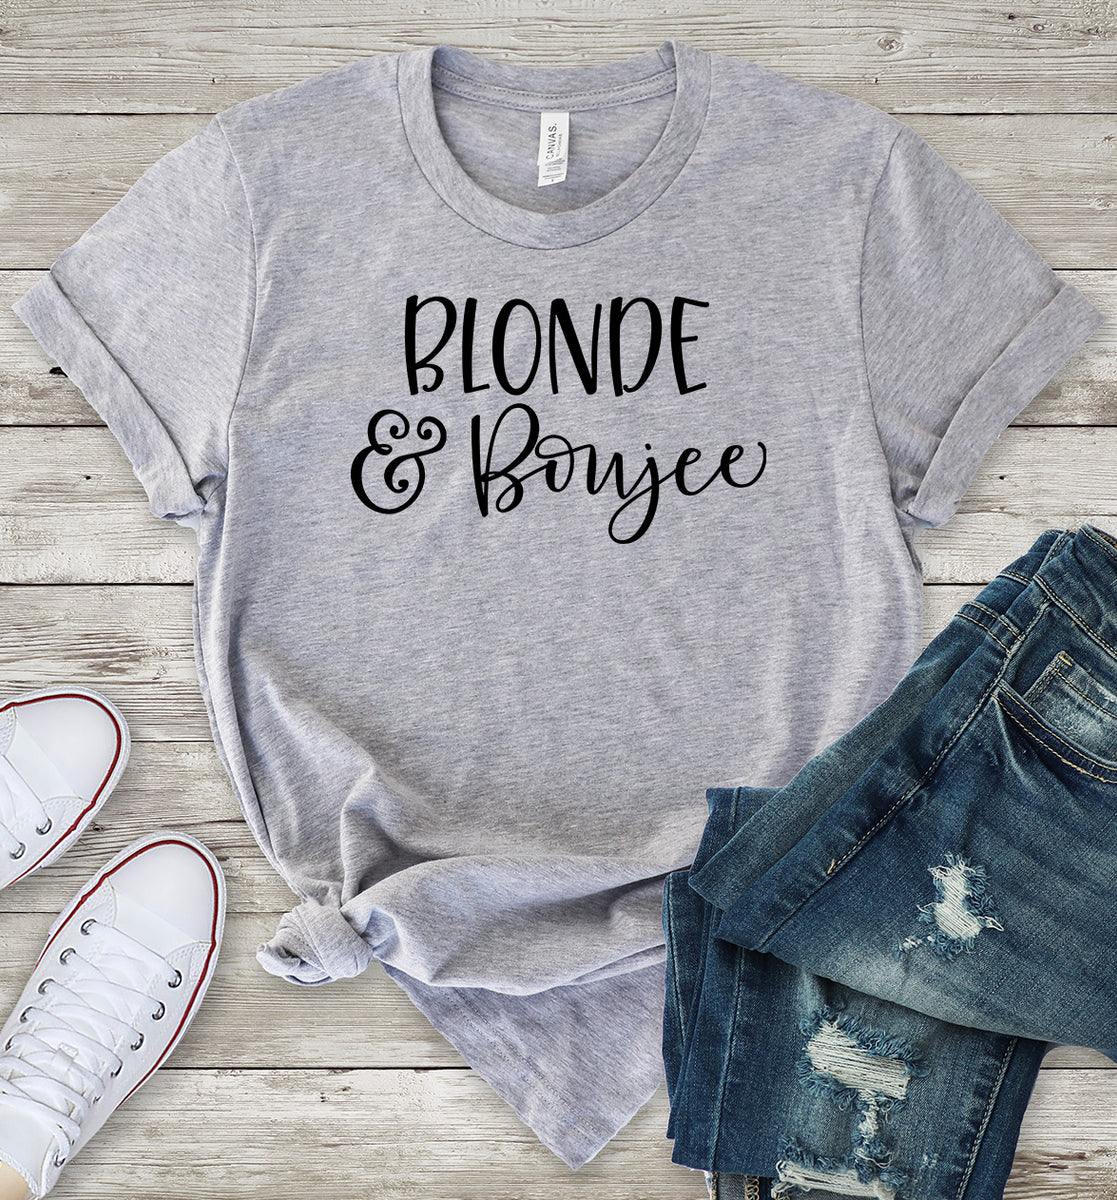 Blonde & Boujee T-Shirt